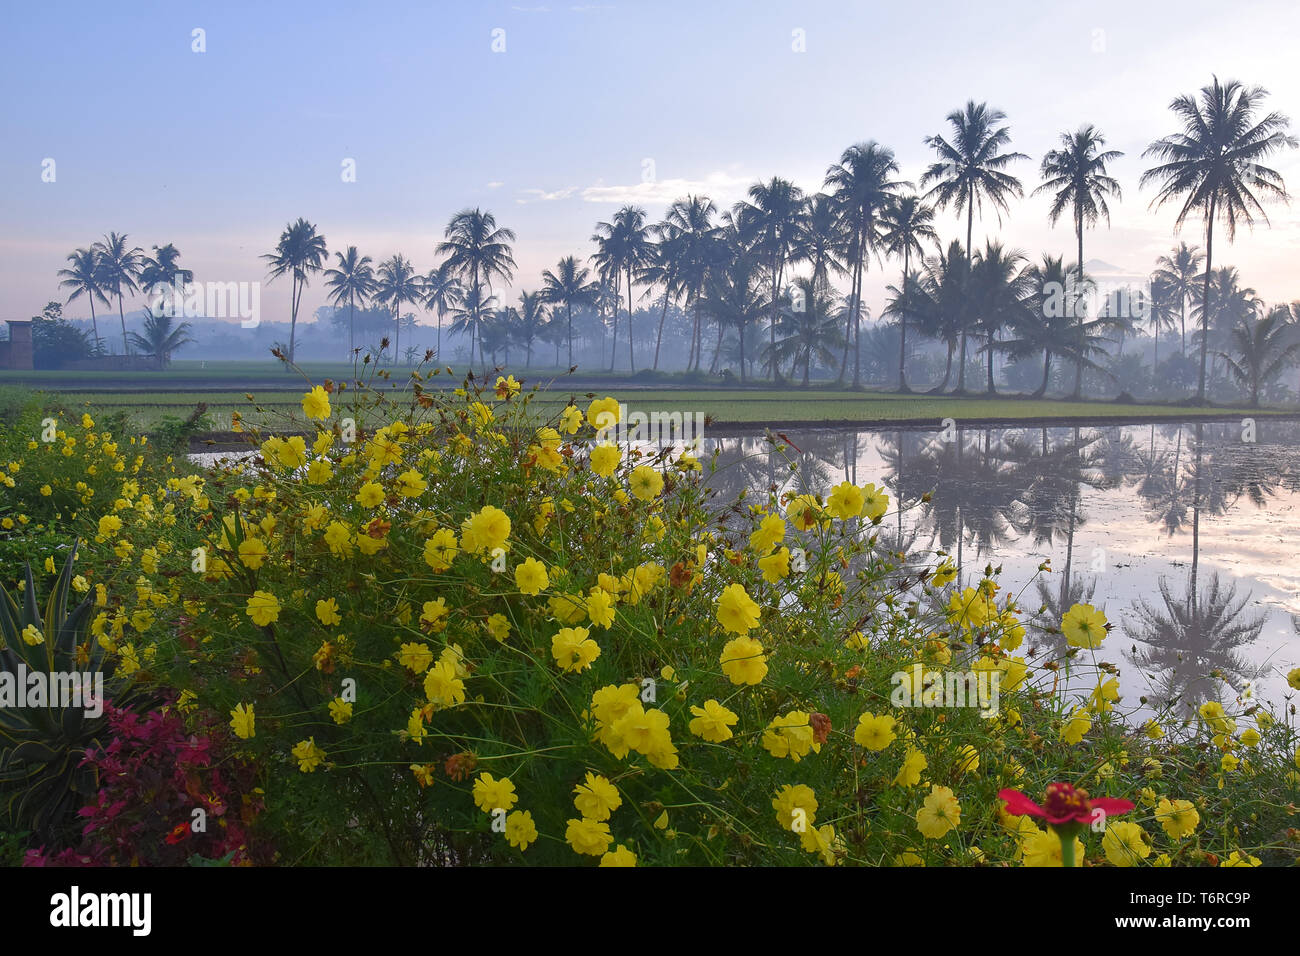 Schöne Landschaft im Dorf, Feldern, die vom Landwirt, Ausdehnung von Kokospalmen, und bunten Blumen Stockfoto